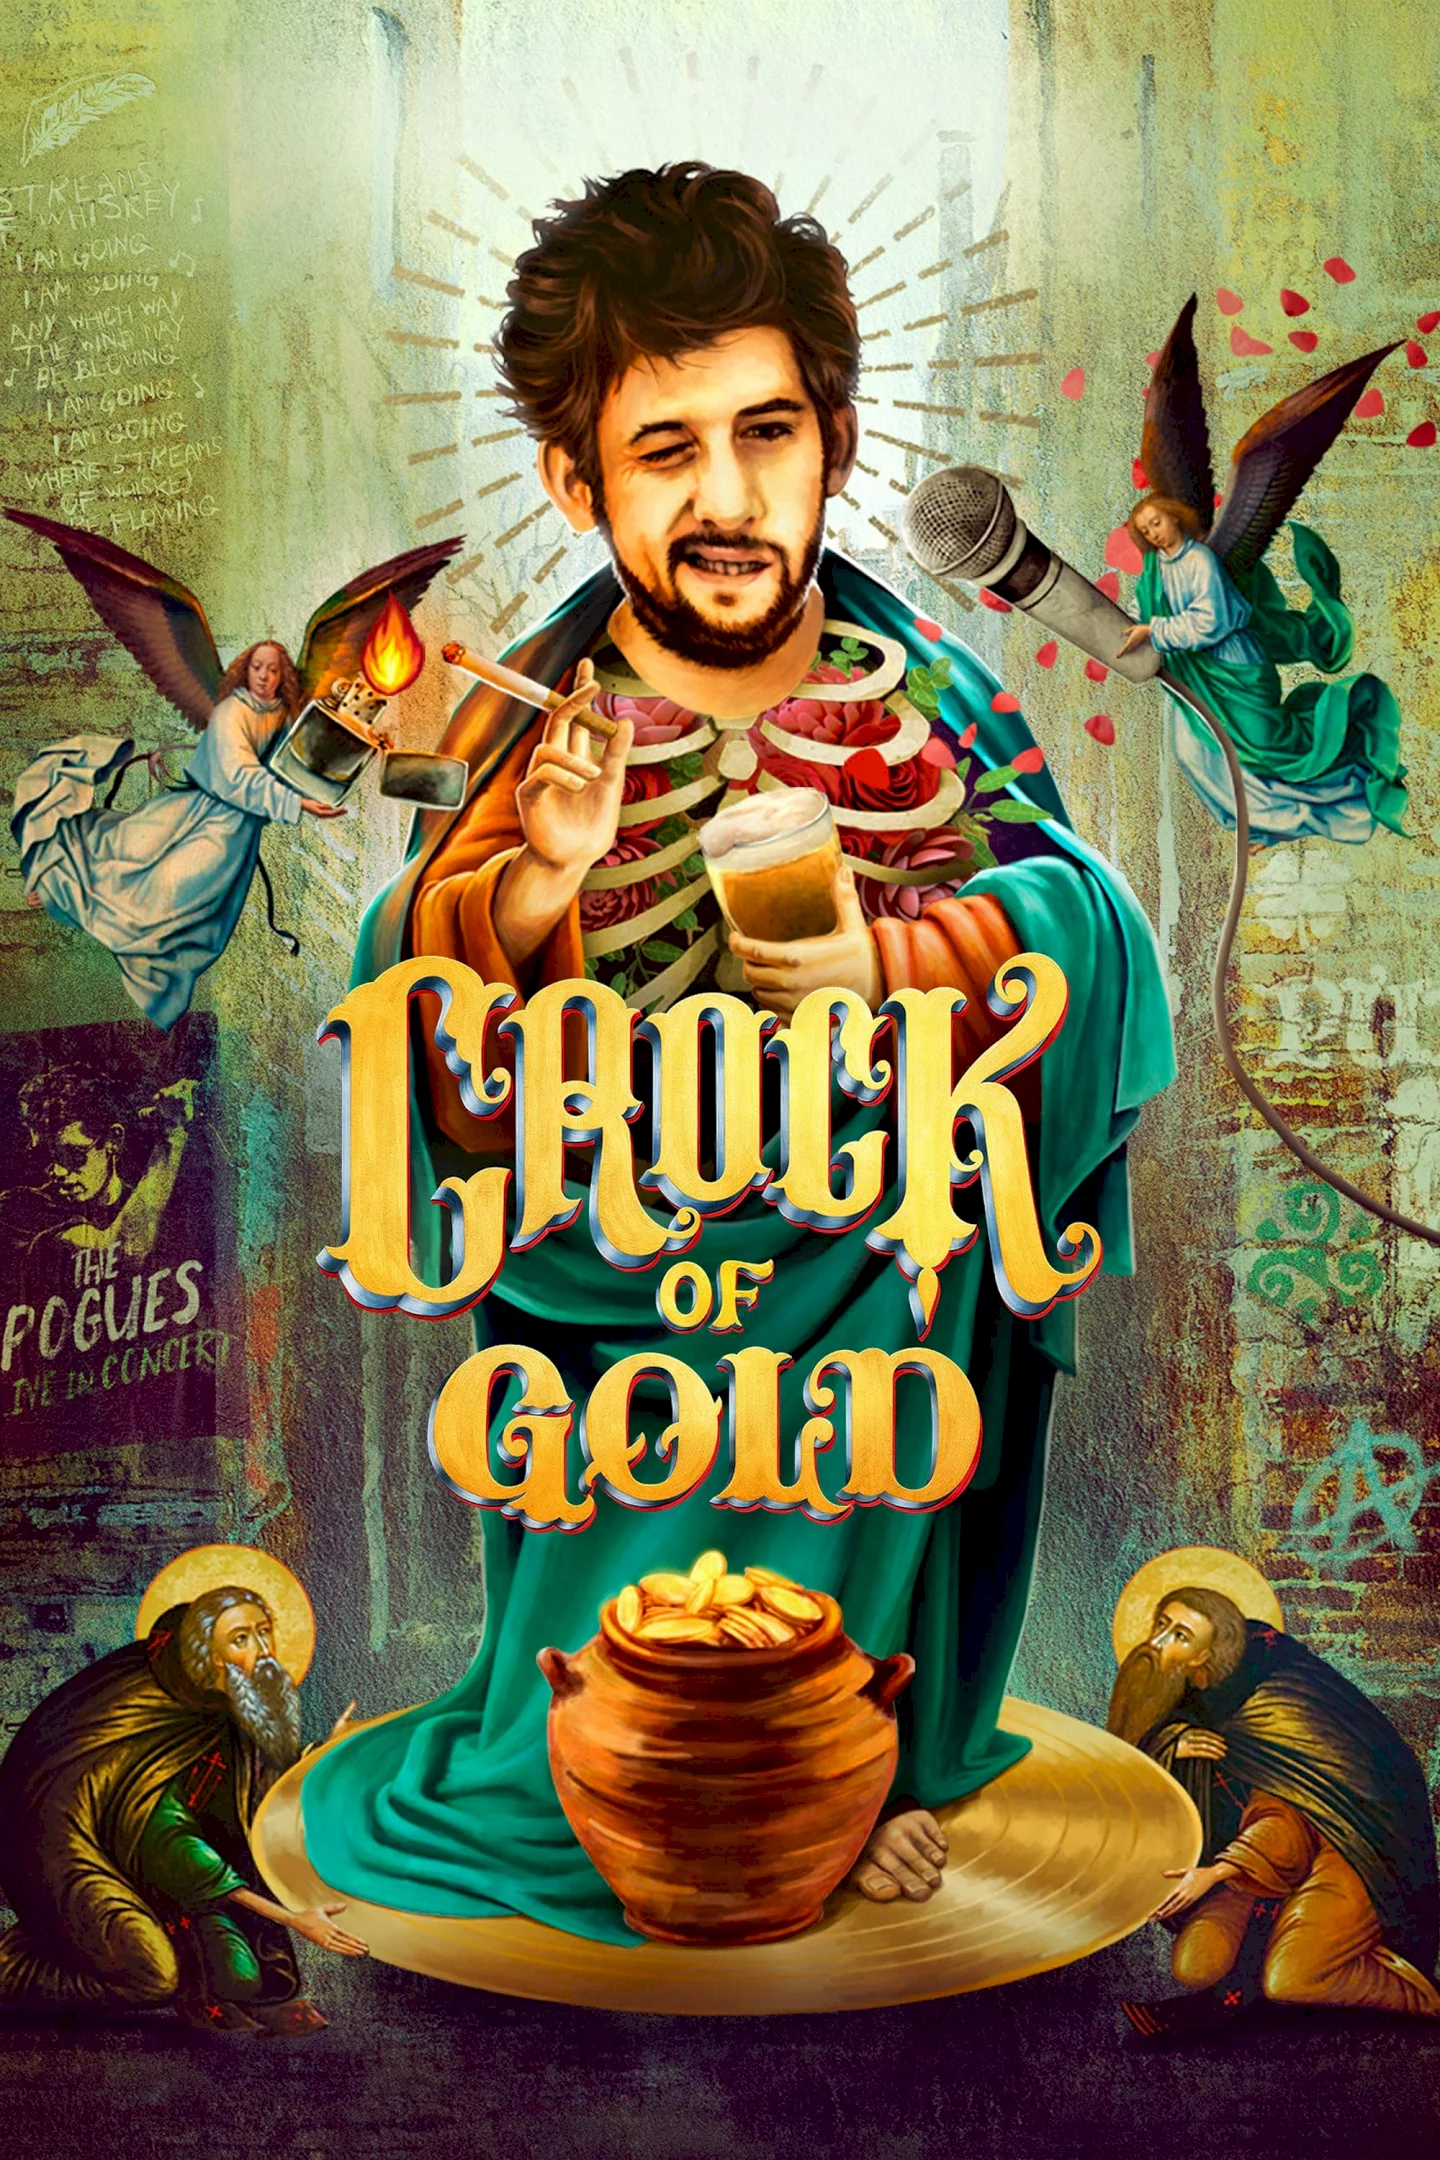 Photo du film : Crock of Gold